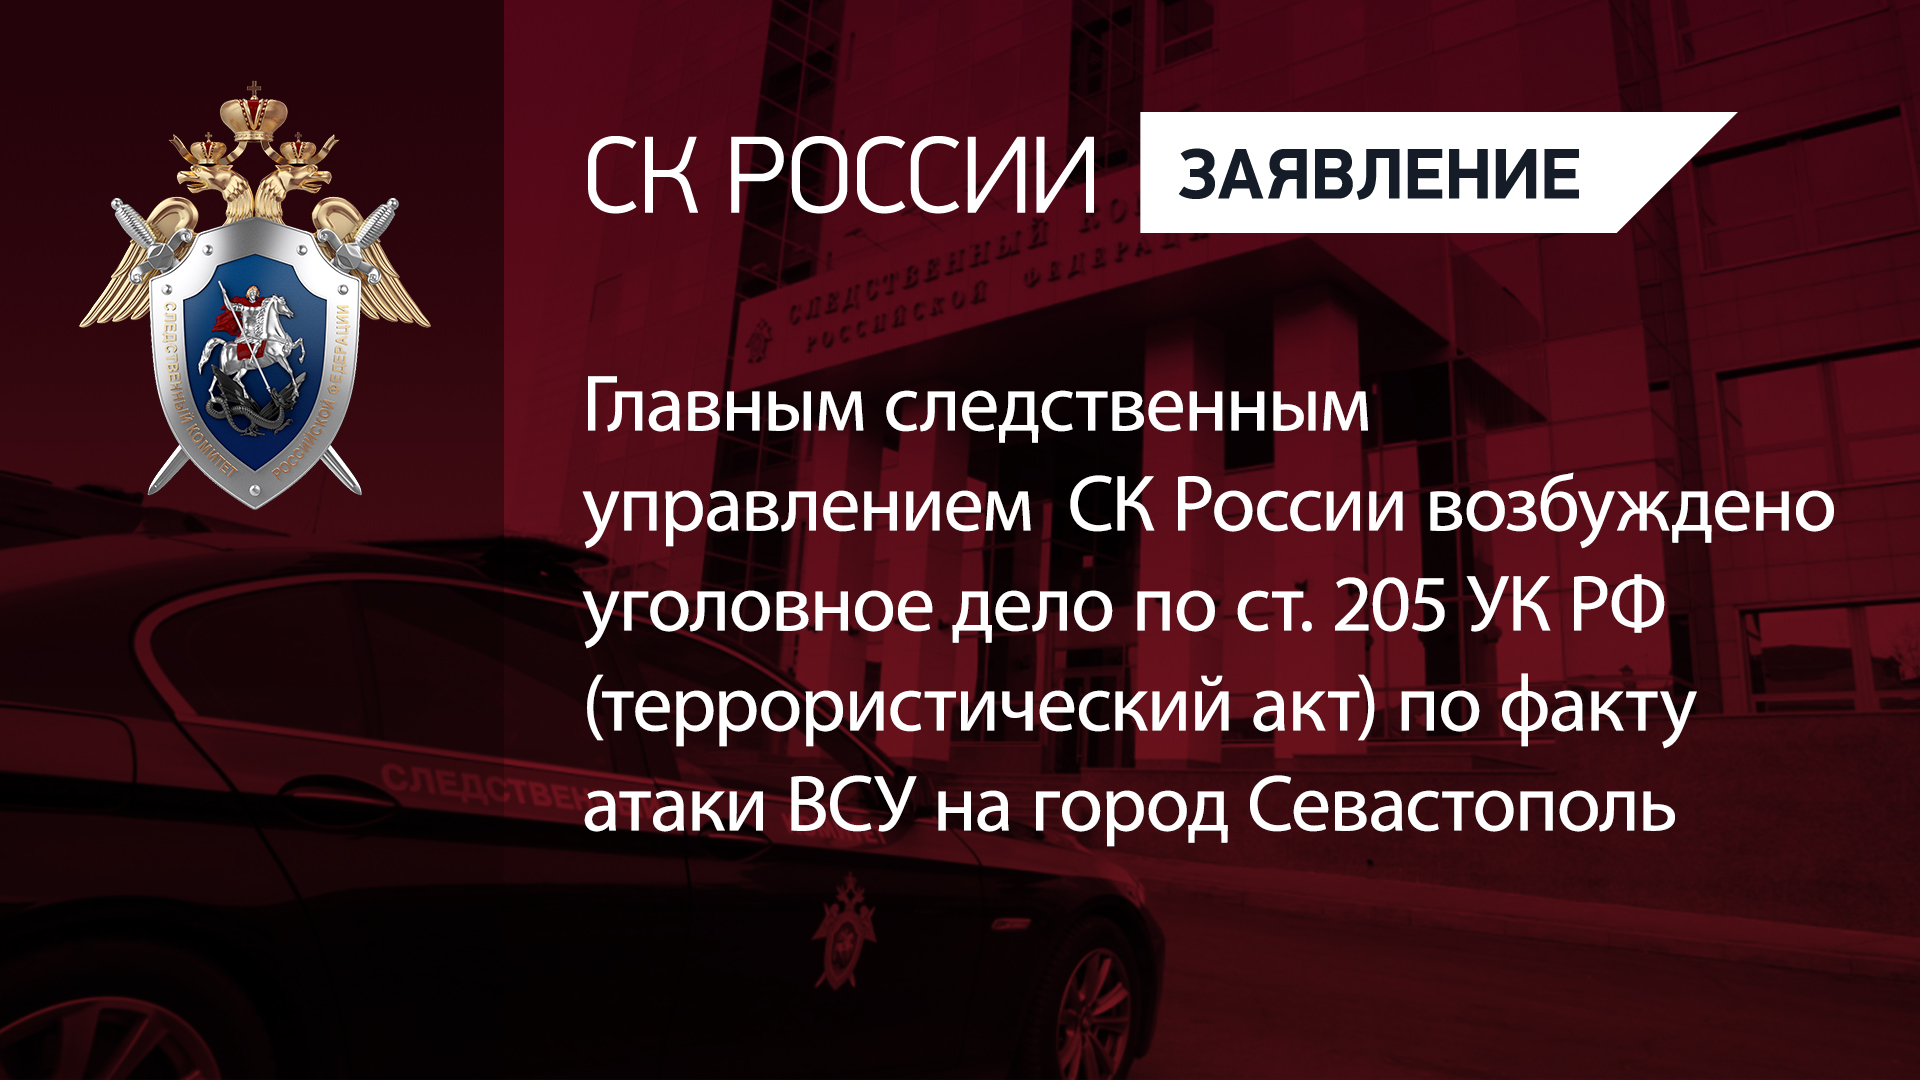 ГСУ СК РФ возбуждено уголовное дело по ст. 205 УК РФ по факту атаки ВСУ на город Севастополь